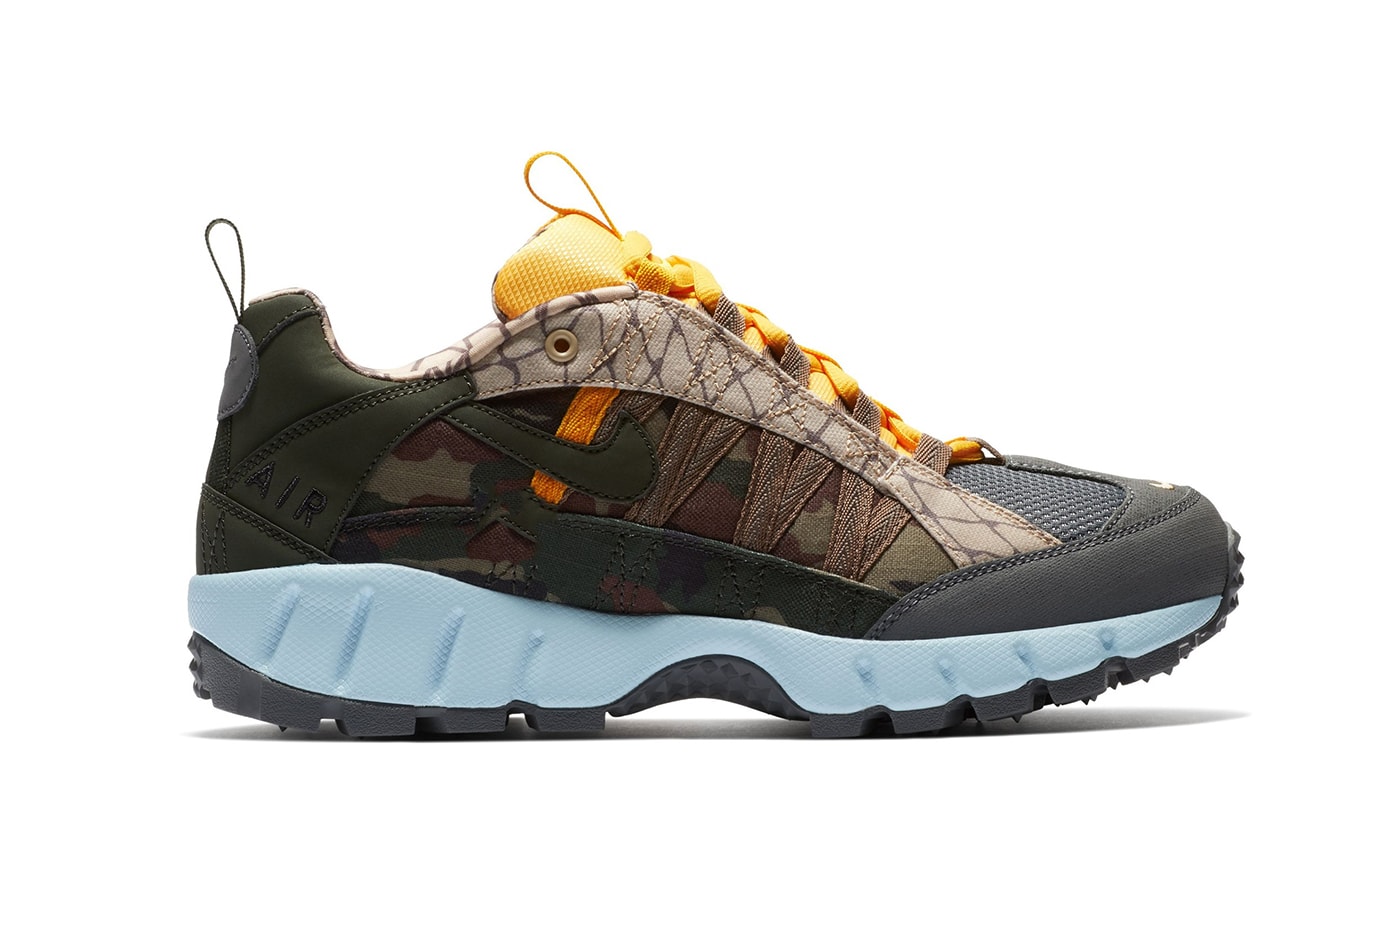 Nike Air Humara Hiking Trail Runners Sneakers Footwear 2018 Release